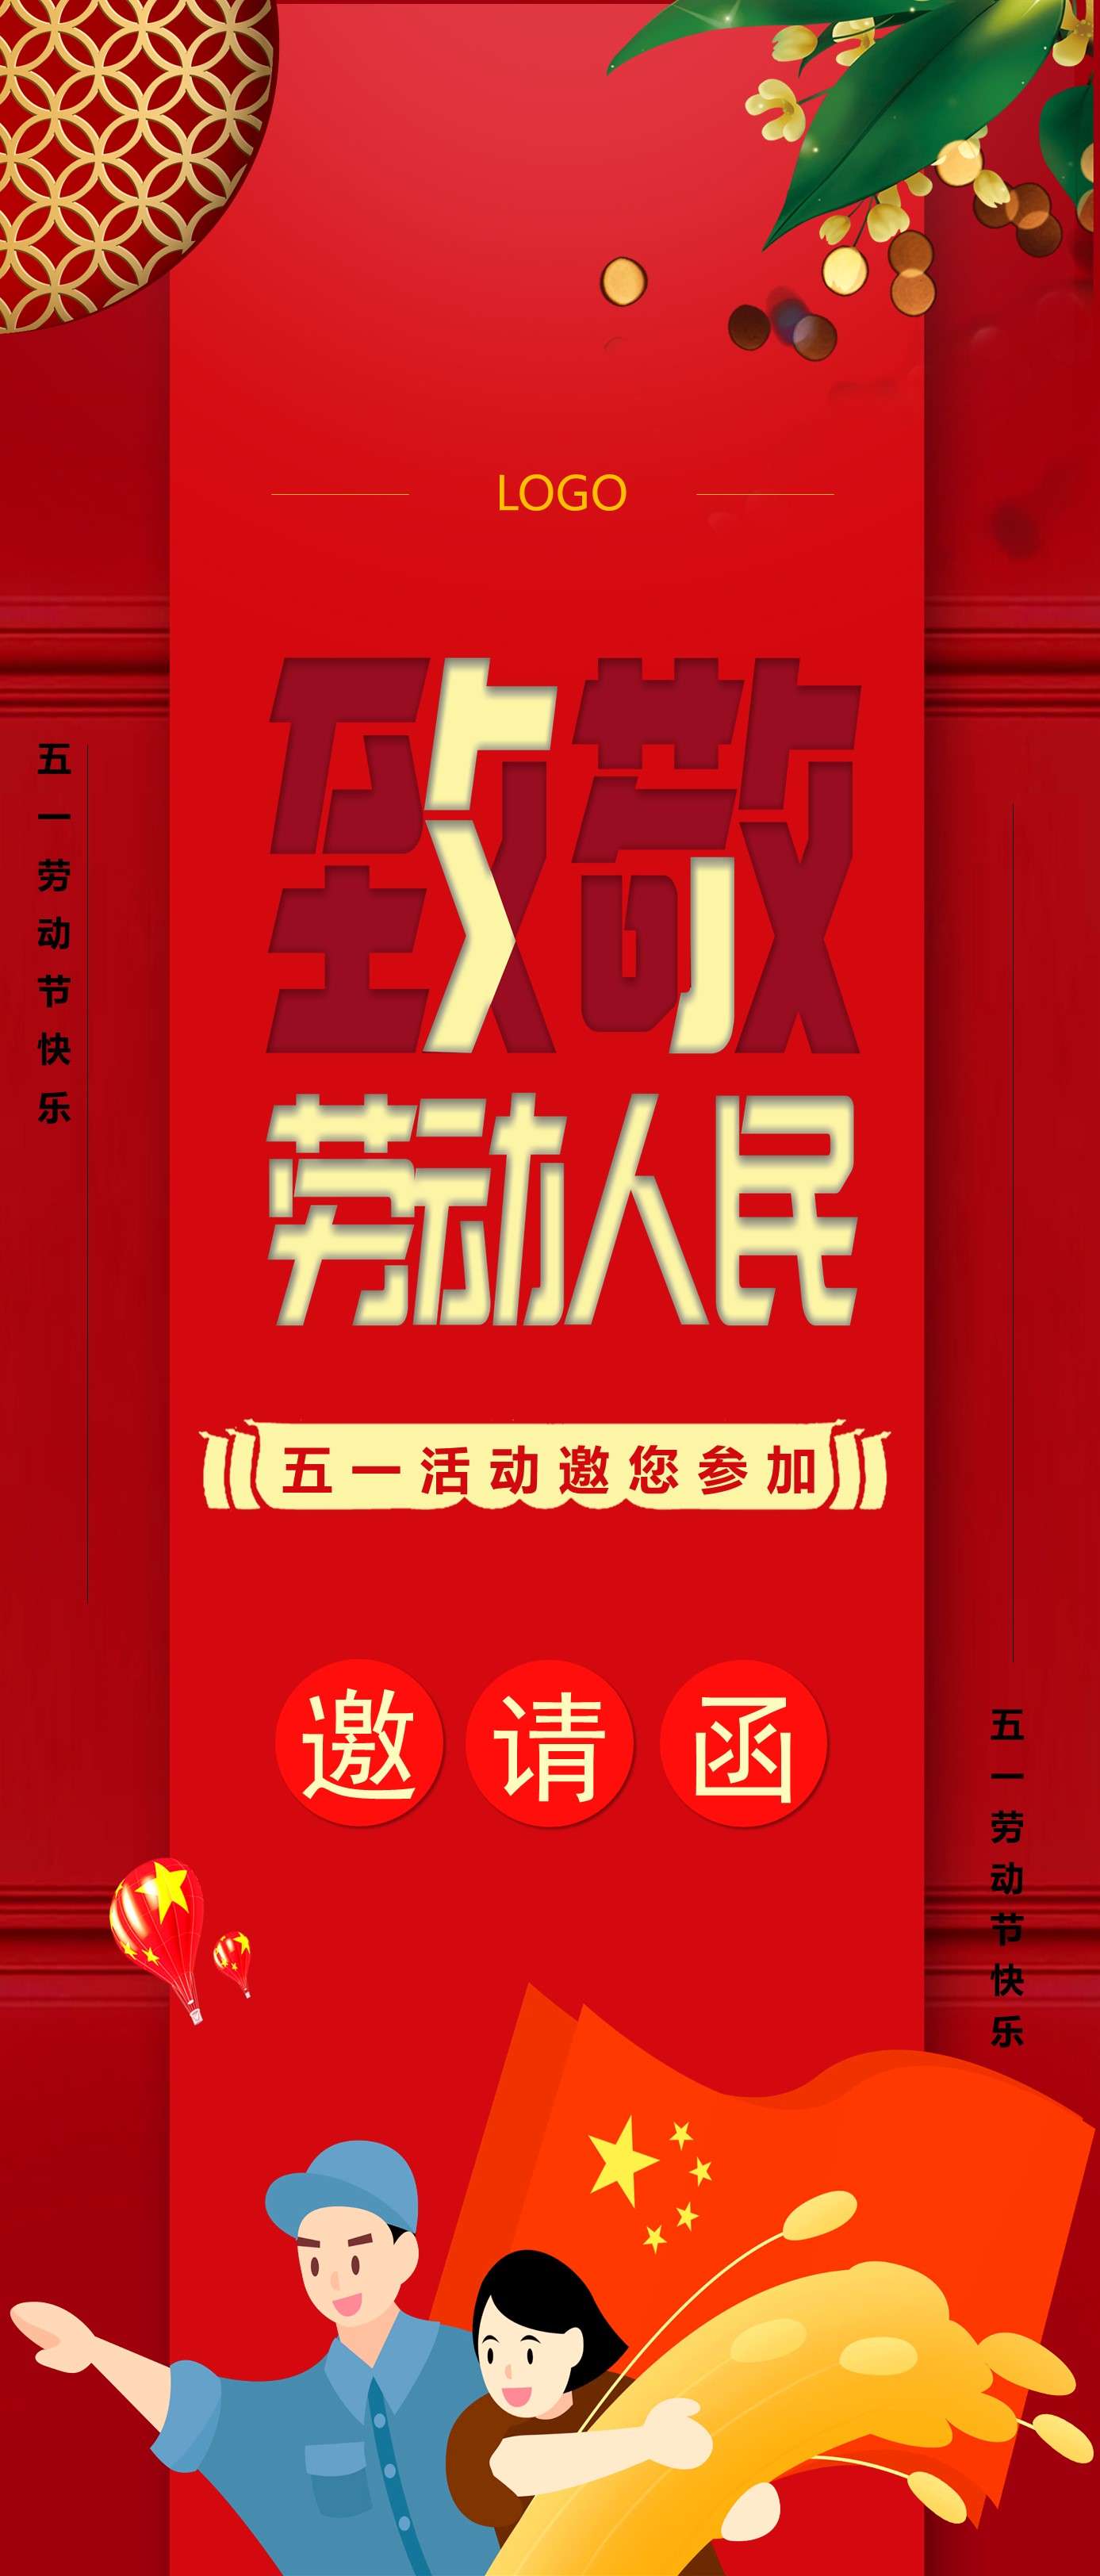 紅色喜慶五一勞動節活動邀請函豎版PPT模板